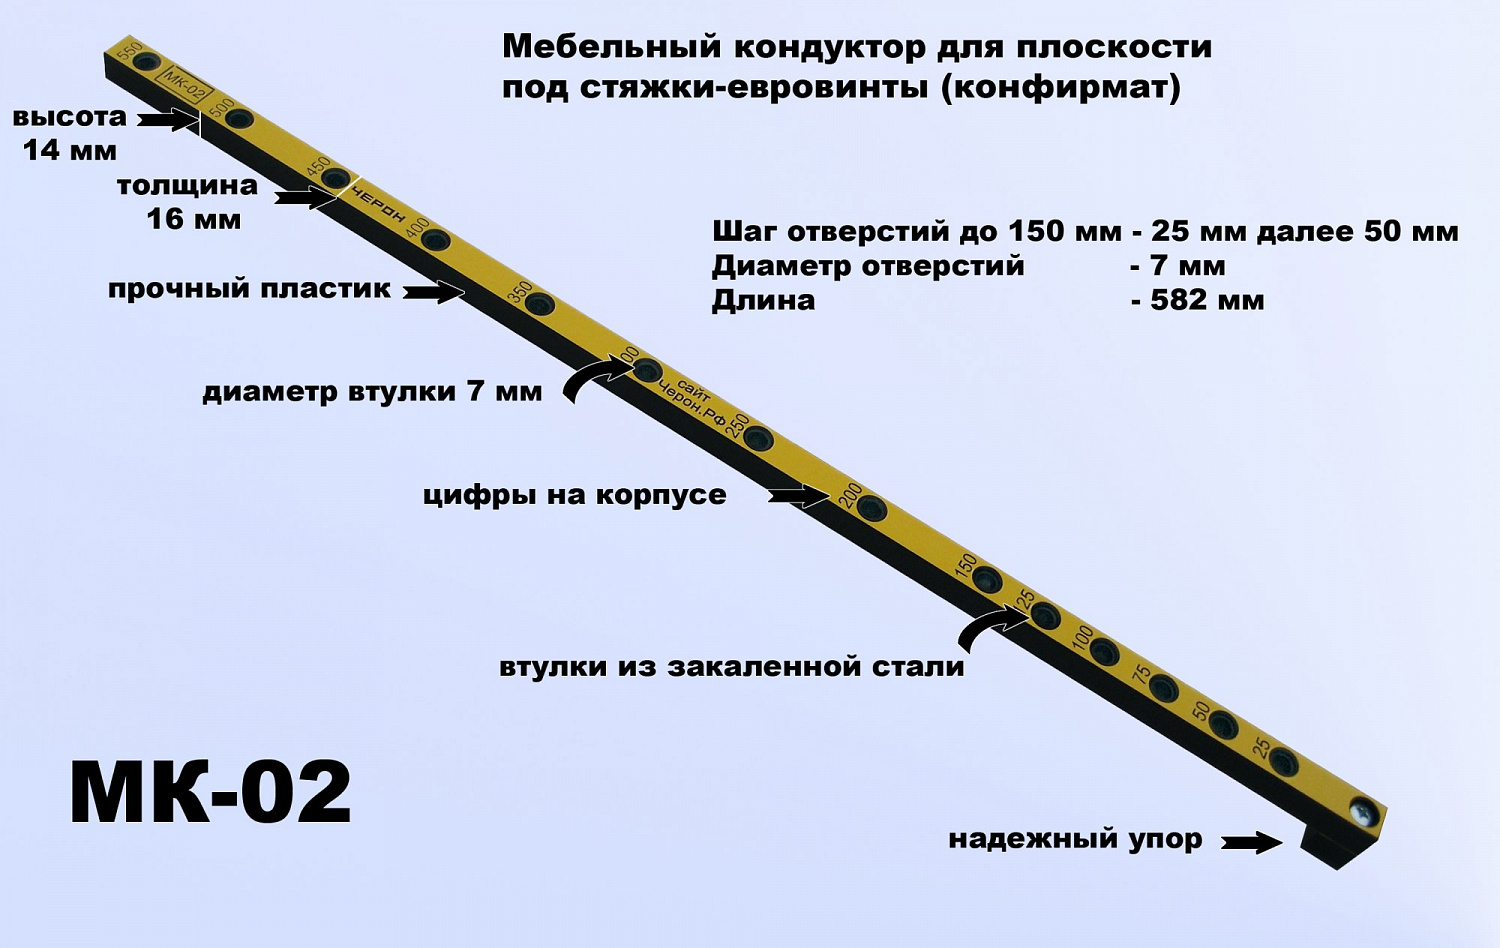 Мебельный кондуктор Черон шаг 25/50 ф втулки 7 мм МК-02